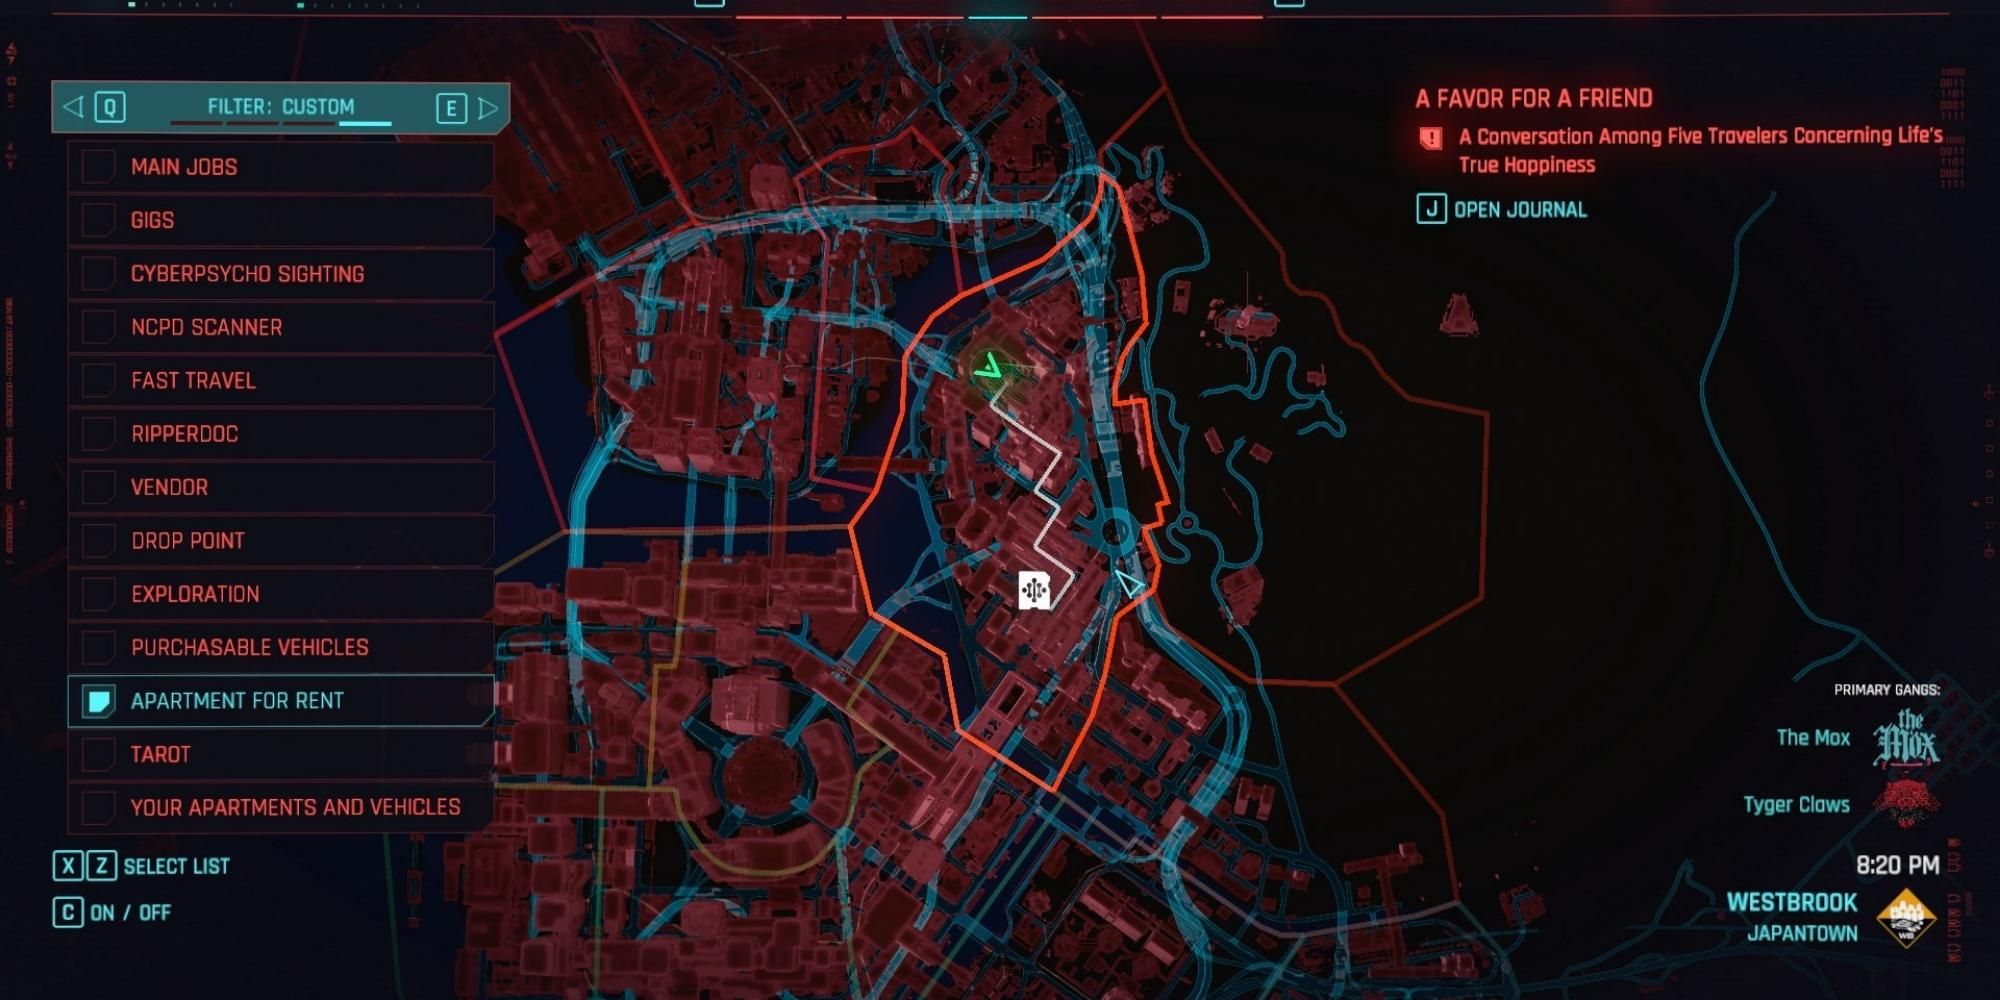 capture d'écran de la carte de Chang-Hoon Nam à Westbrook, à Japantown, dans Cyberpunk 2077